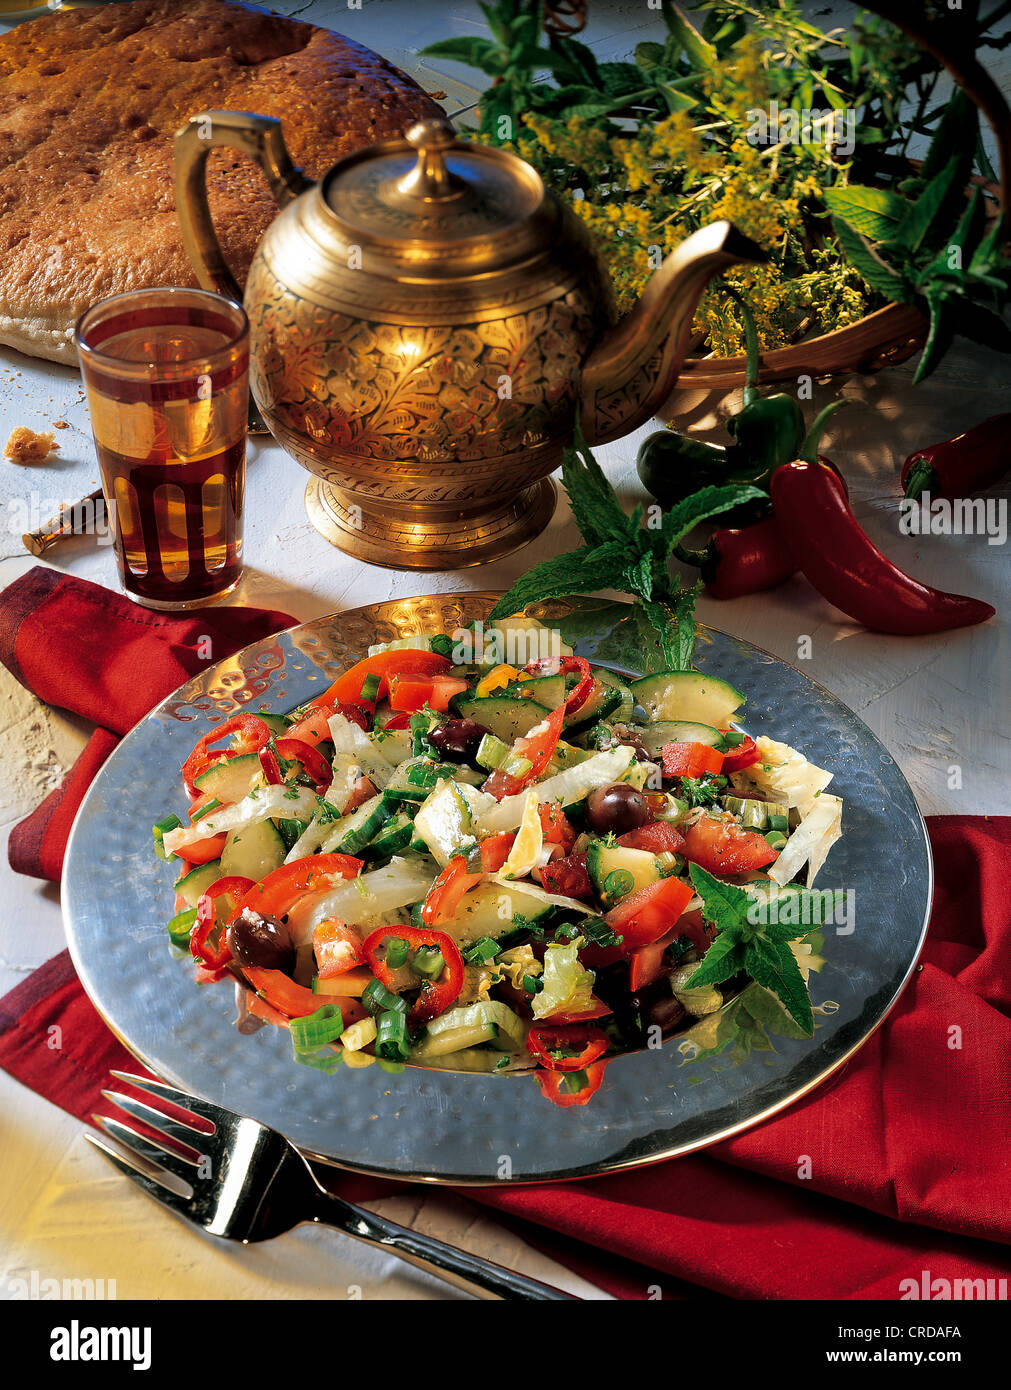 Anatolian shepherd's salad, Turkey. Stock Photo